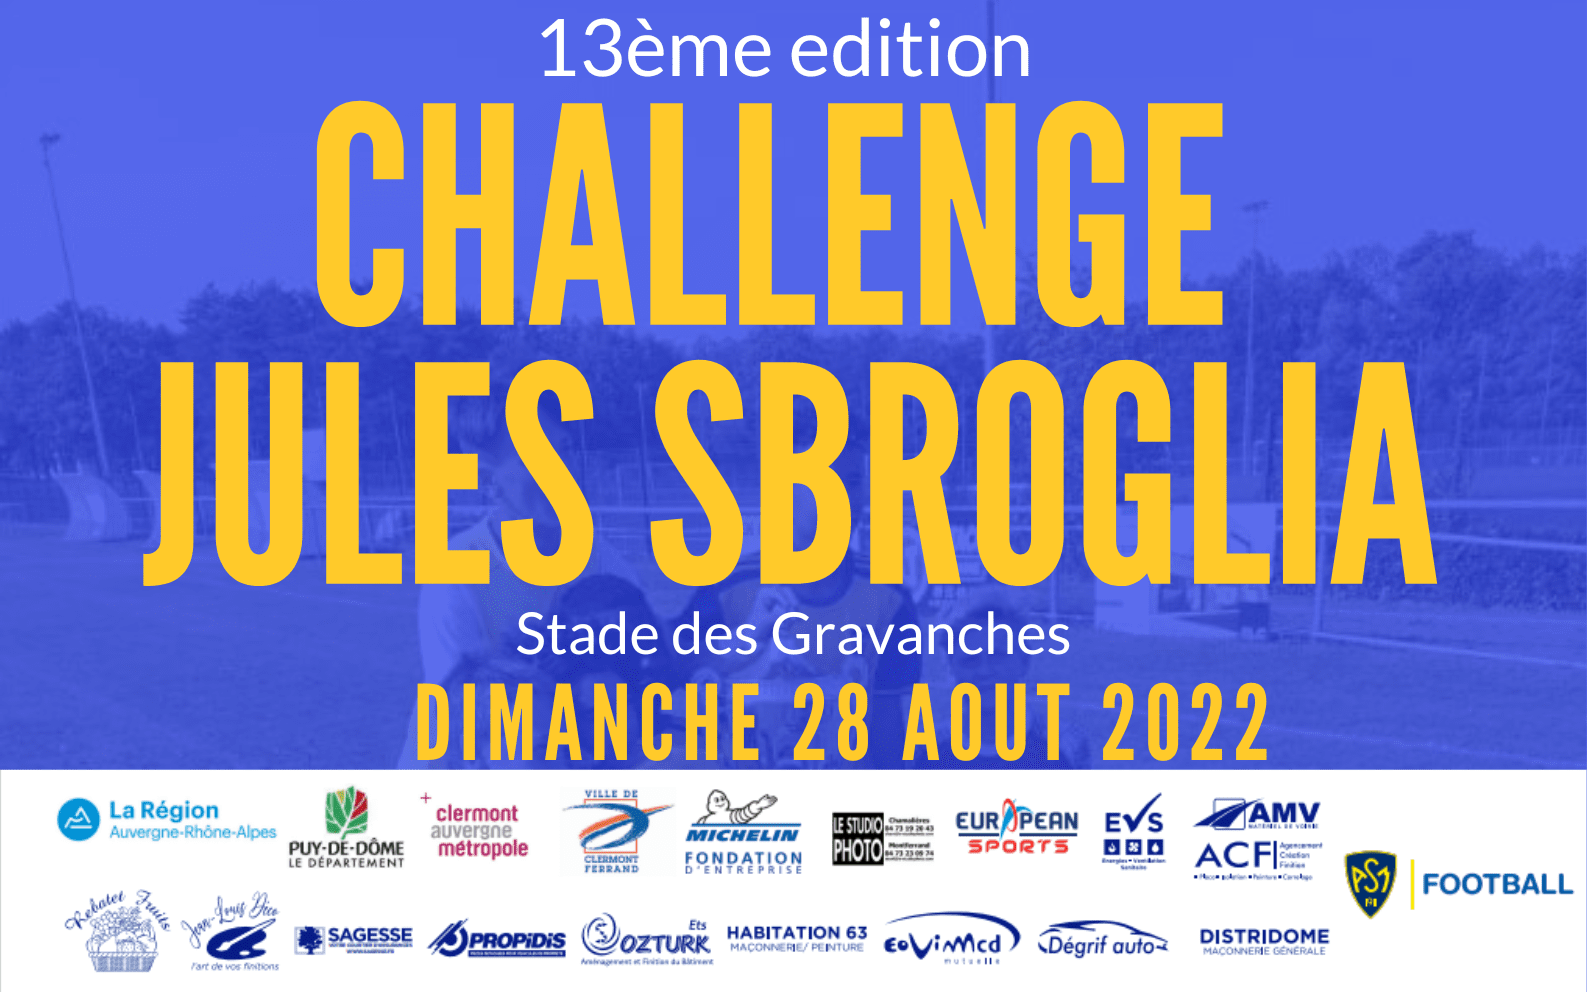 Rendez-vous ce week-end aux Gravanches pour le Challenge Jules Sbroglia !